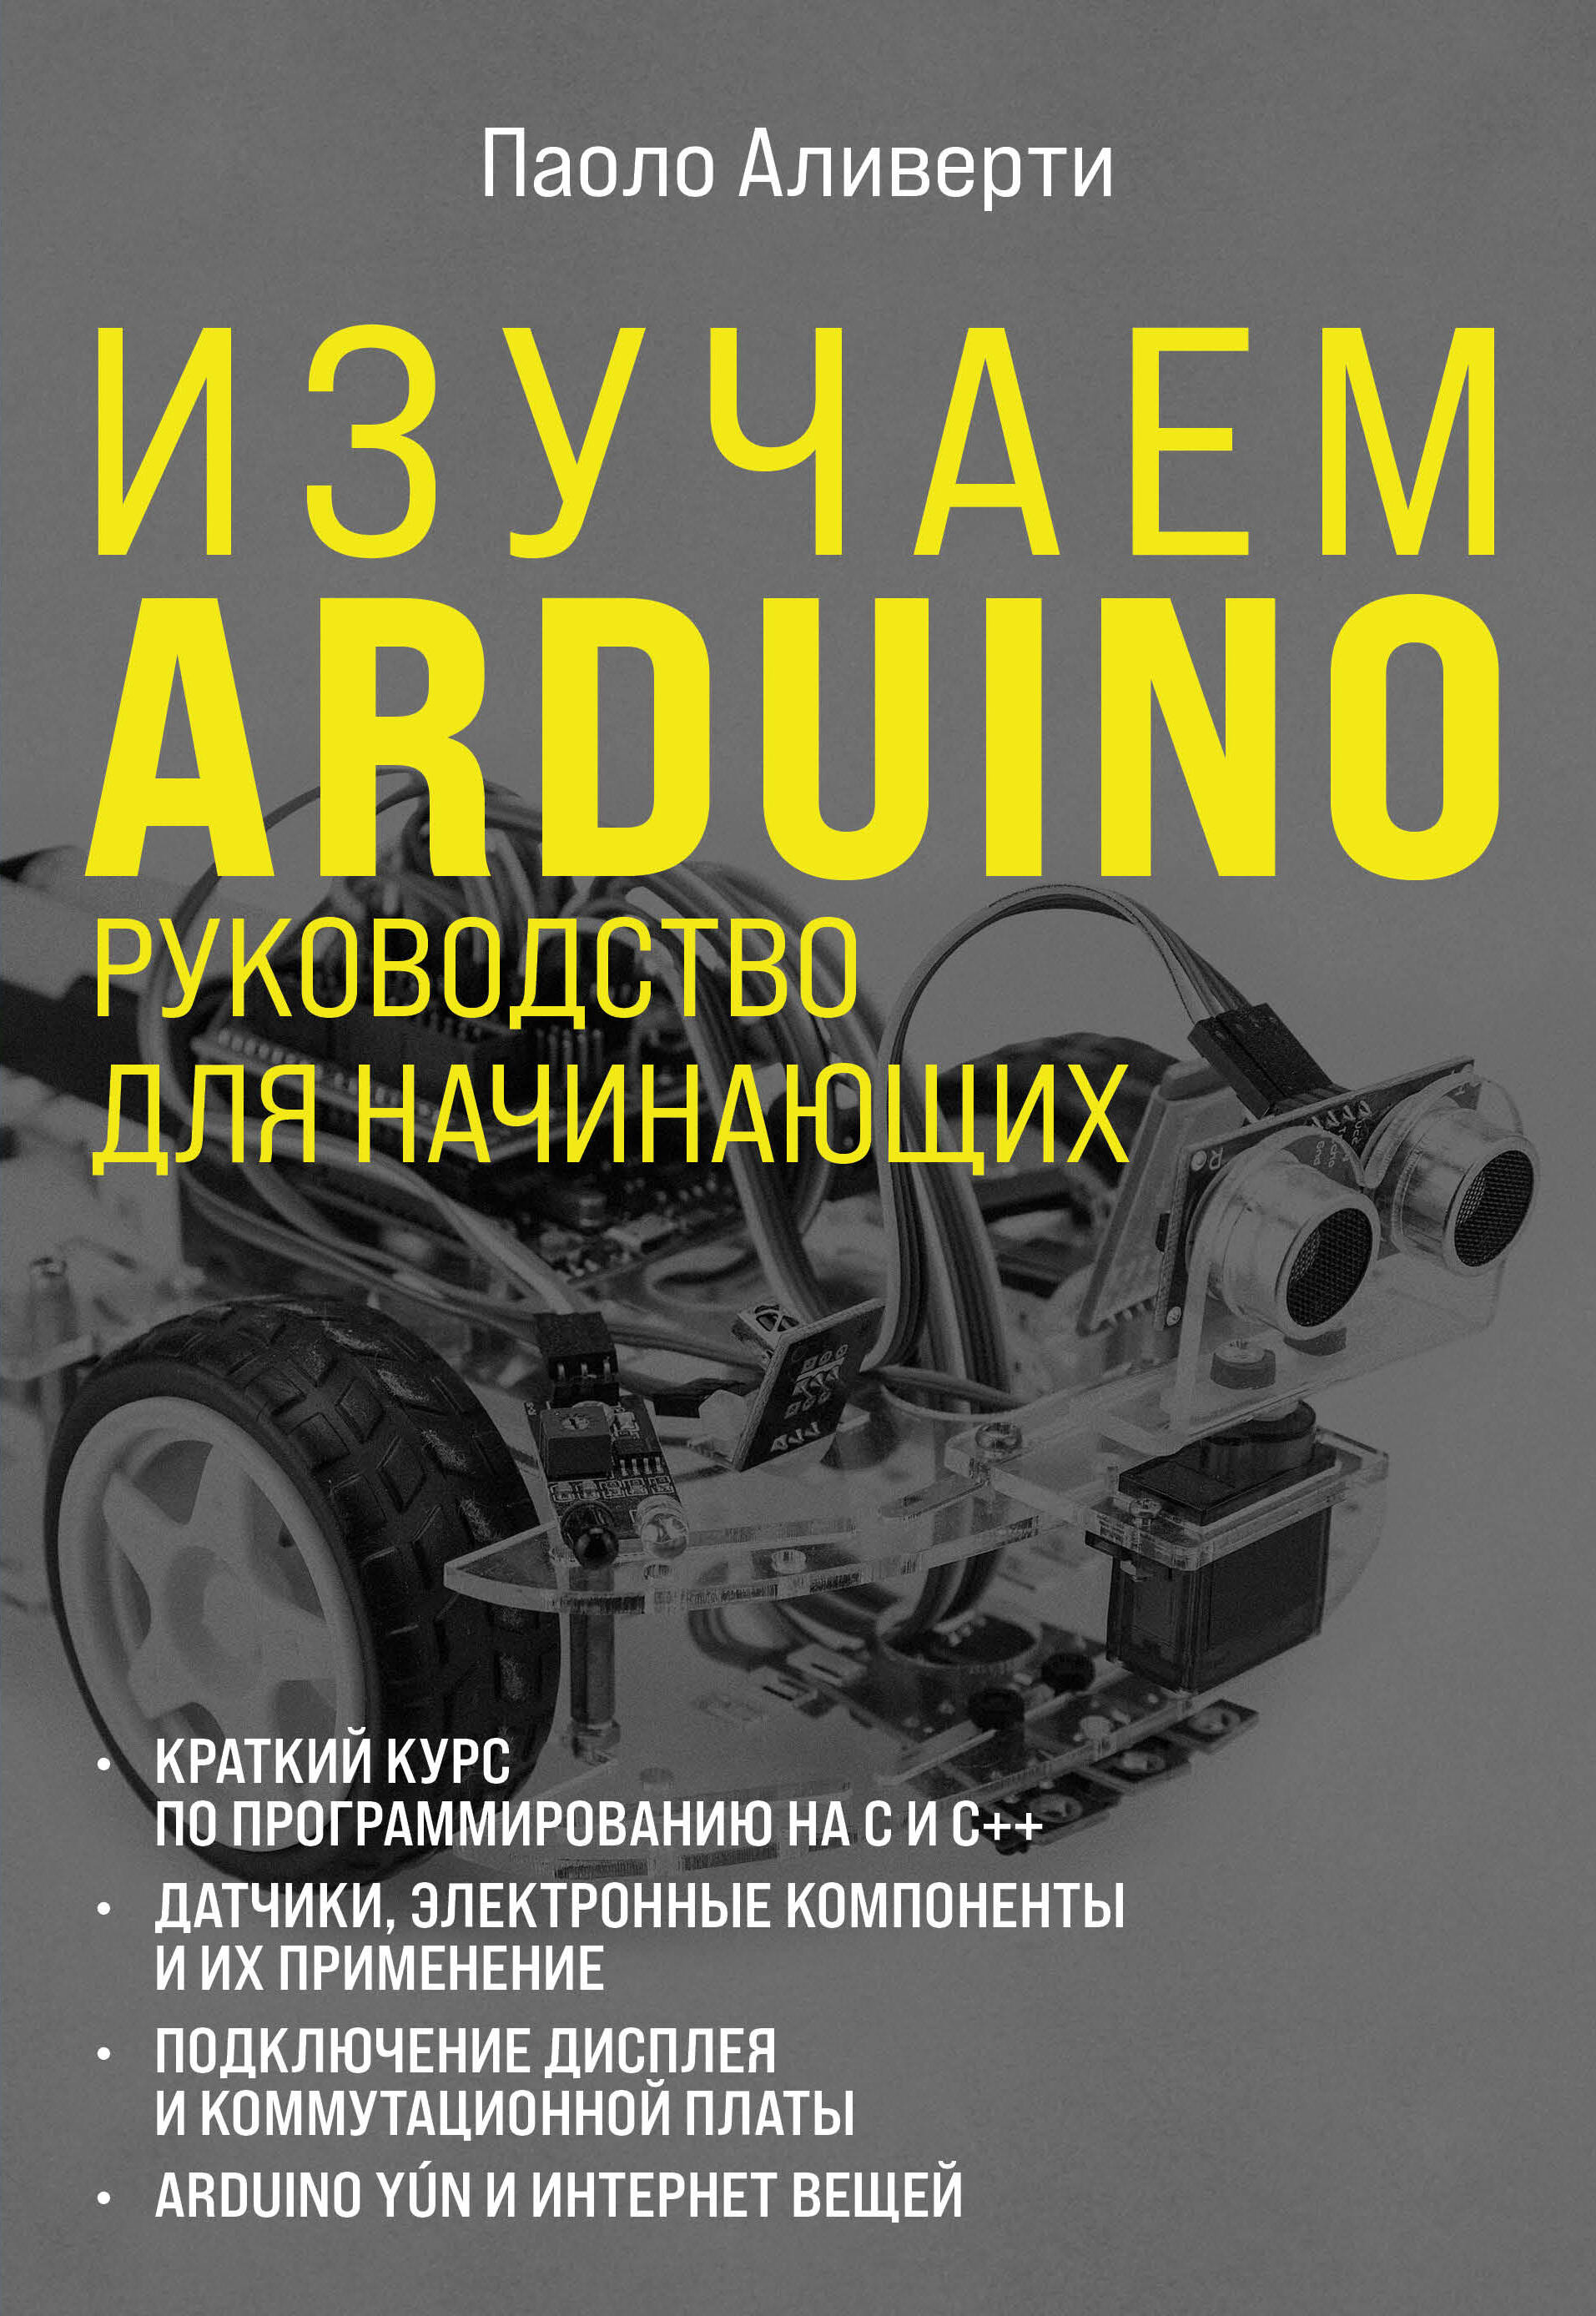 Изучаем Arduino. Руководство для начинающих изучаем arduino учебный набор книга